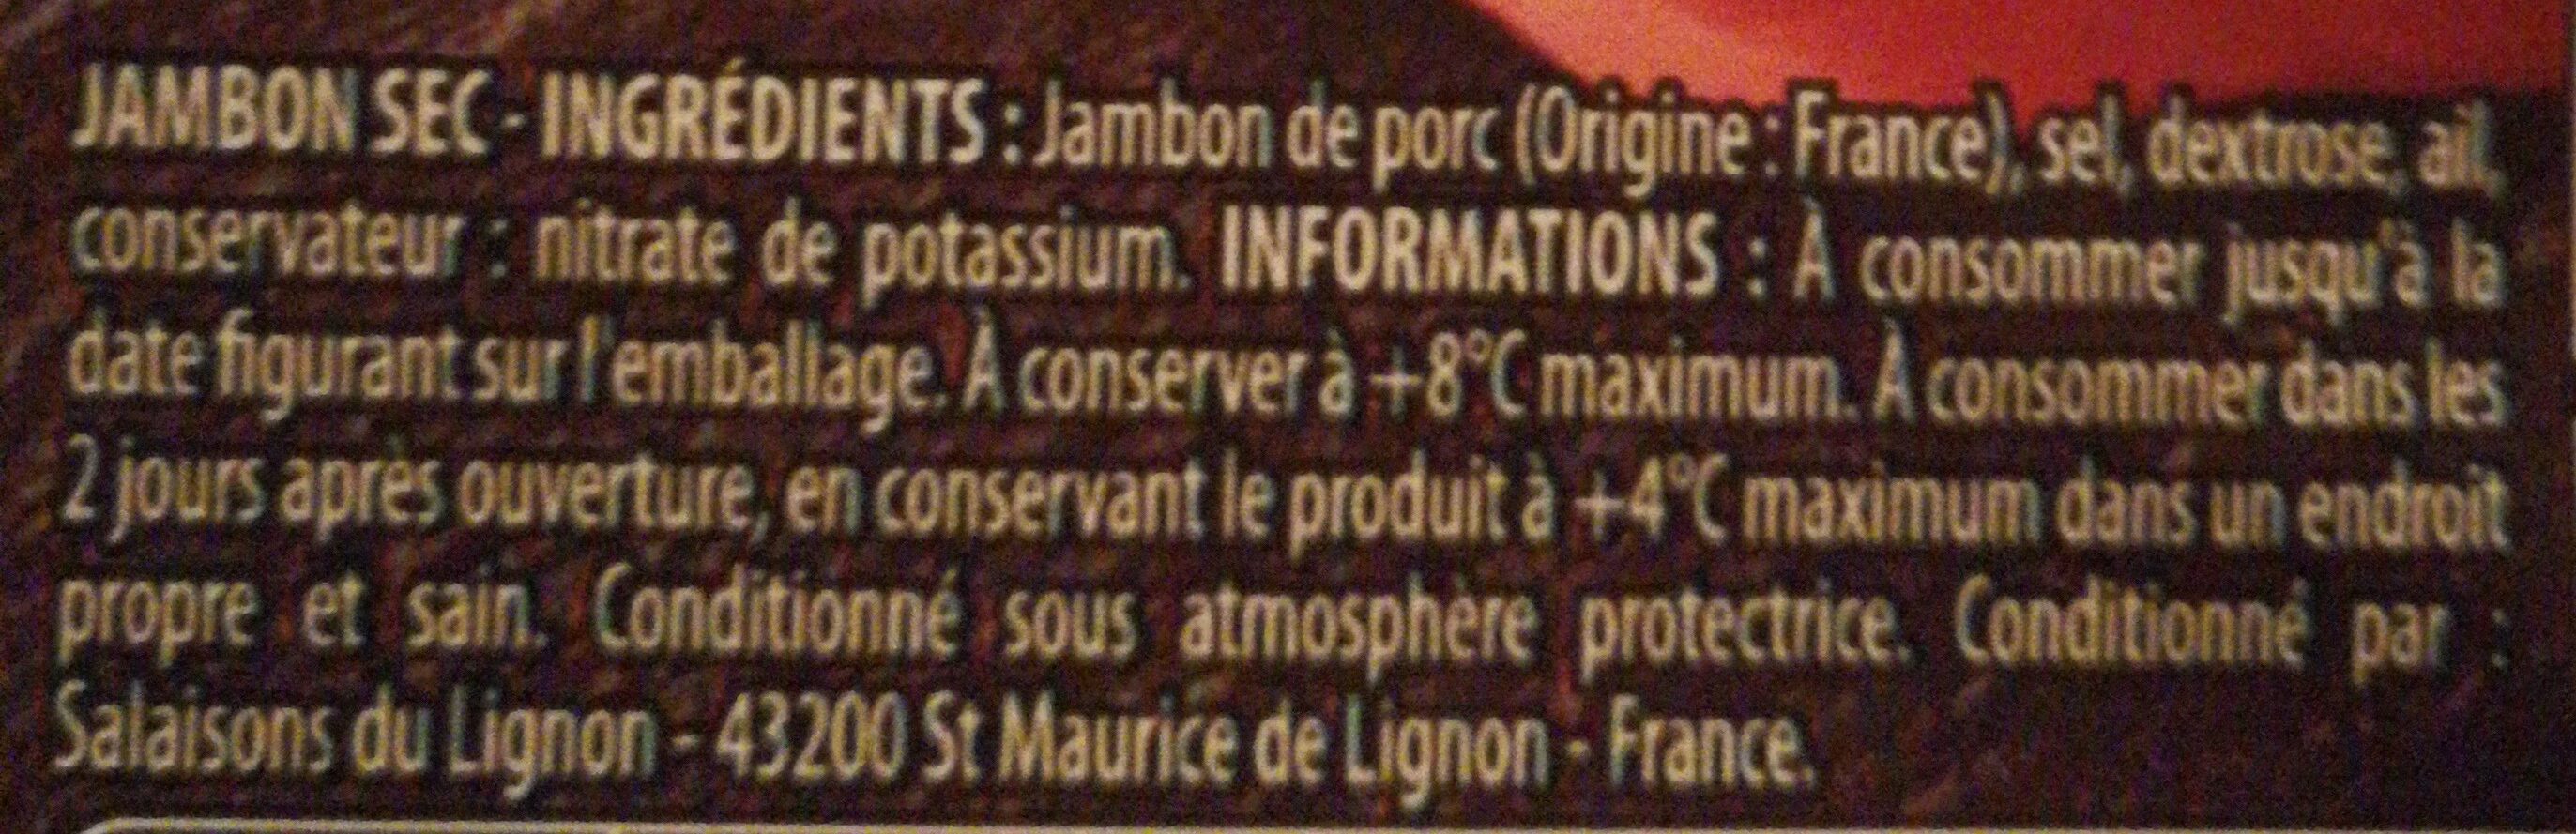 Quart de jambon sec pré-tranché - Ingredients - fr